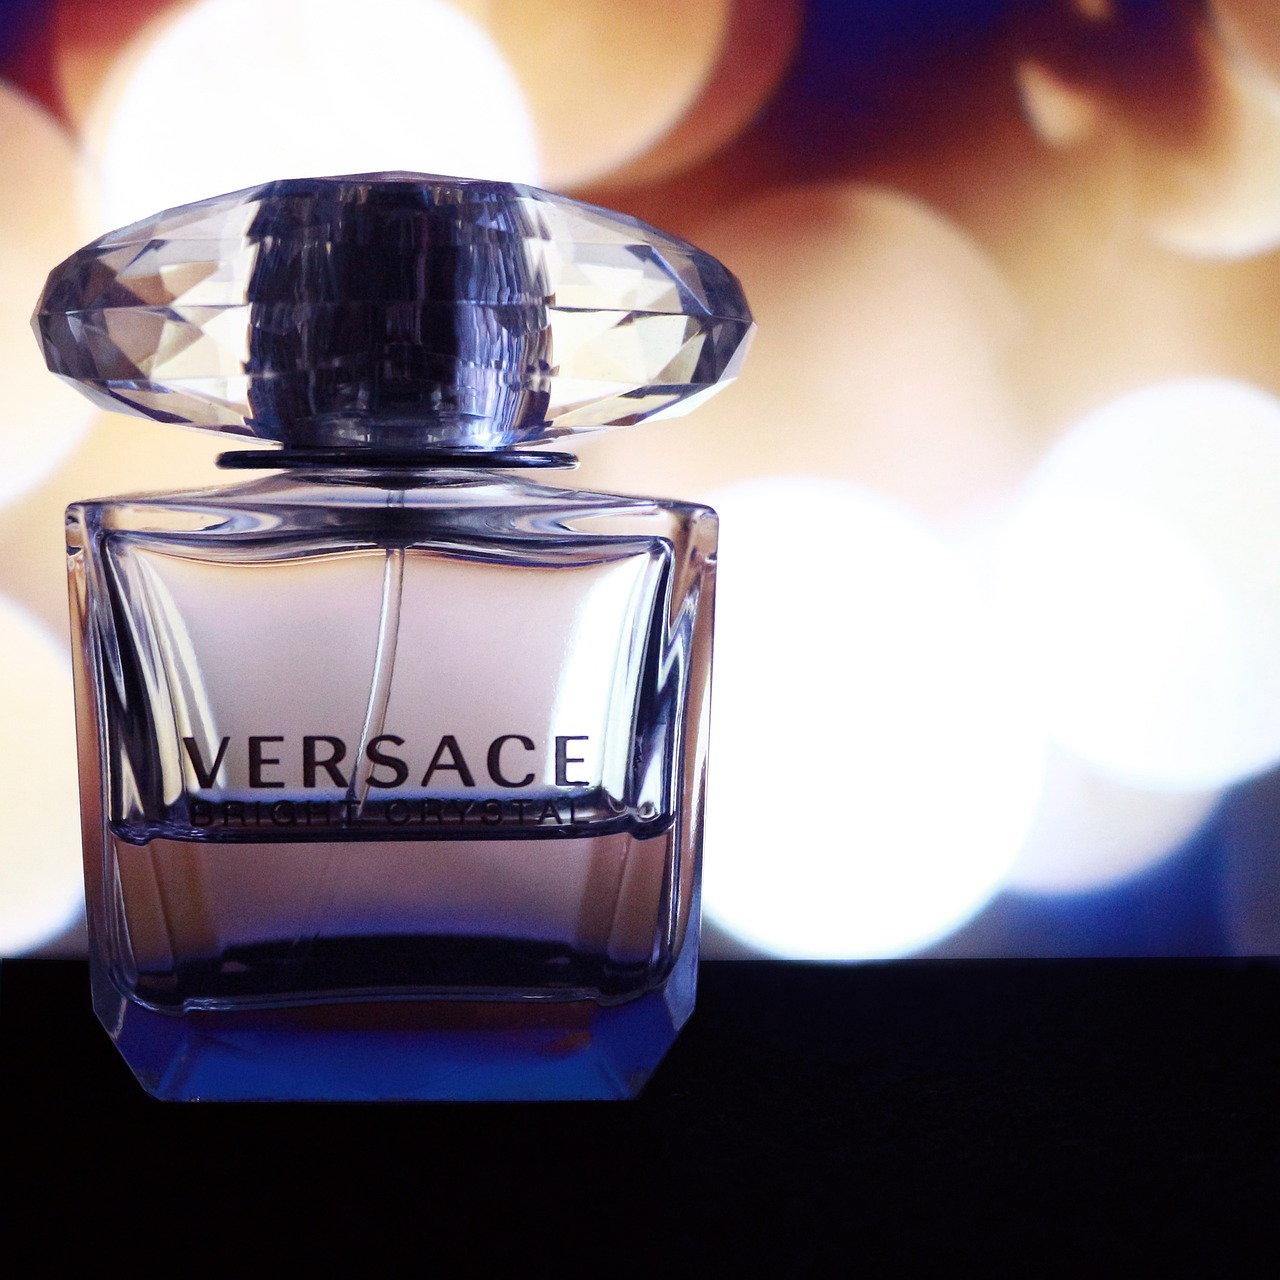 Le monde luxueux de la mode avec Versace